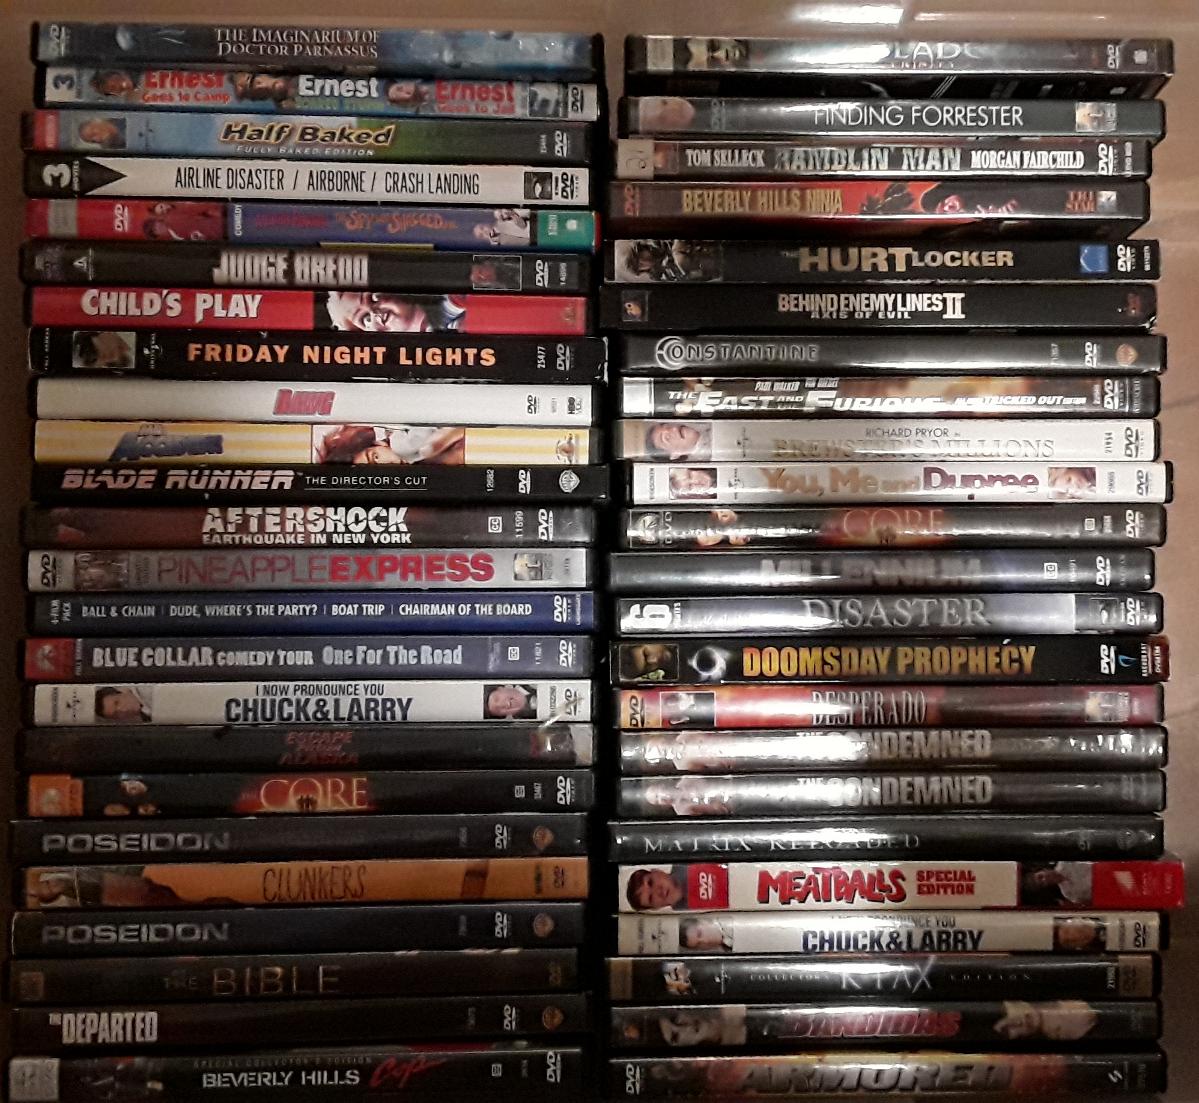 Numerous movies